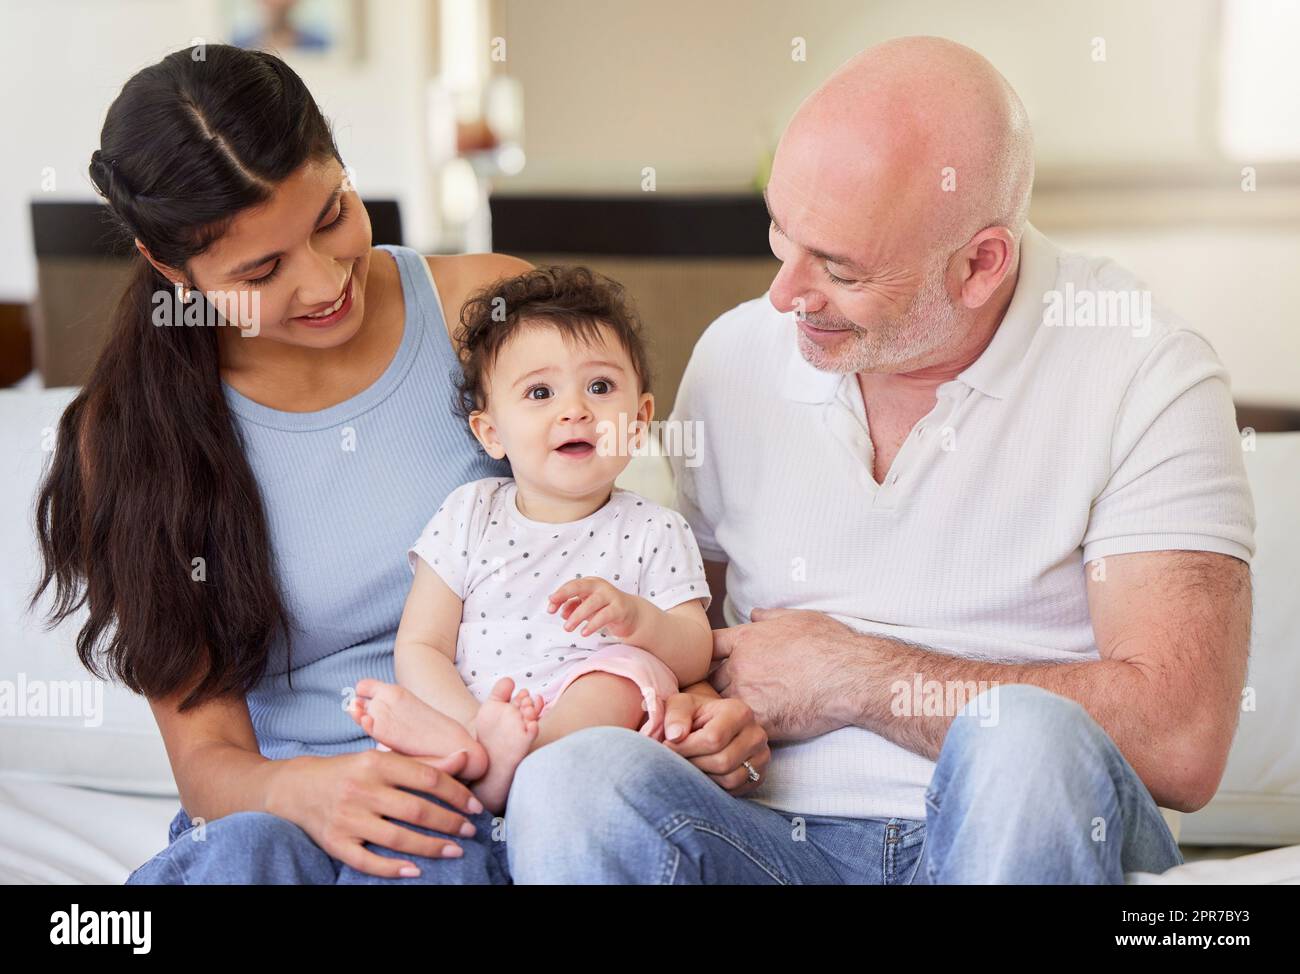 Ein junges, glückliches, gemischtrassiges Paar, das sich mit seinem adoptierten Baby zu Hause anfreundet. Ein kleines Mädchen lächelt, nachdem es von einem Weißen und einer Mischrasse adoptiert wurde. Mann und Frau entspannen sich mit ihrem Kind Stockfoto